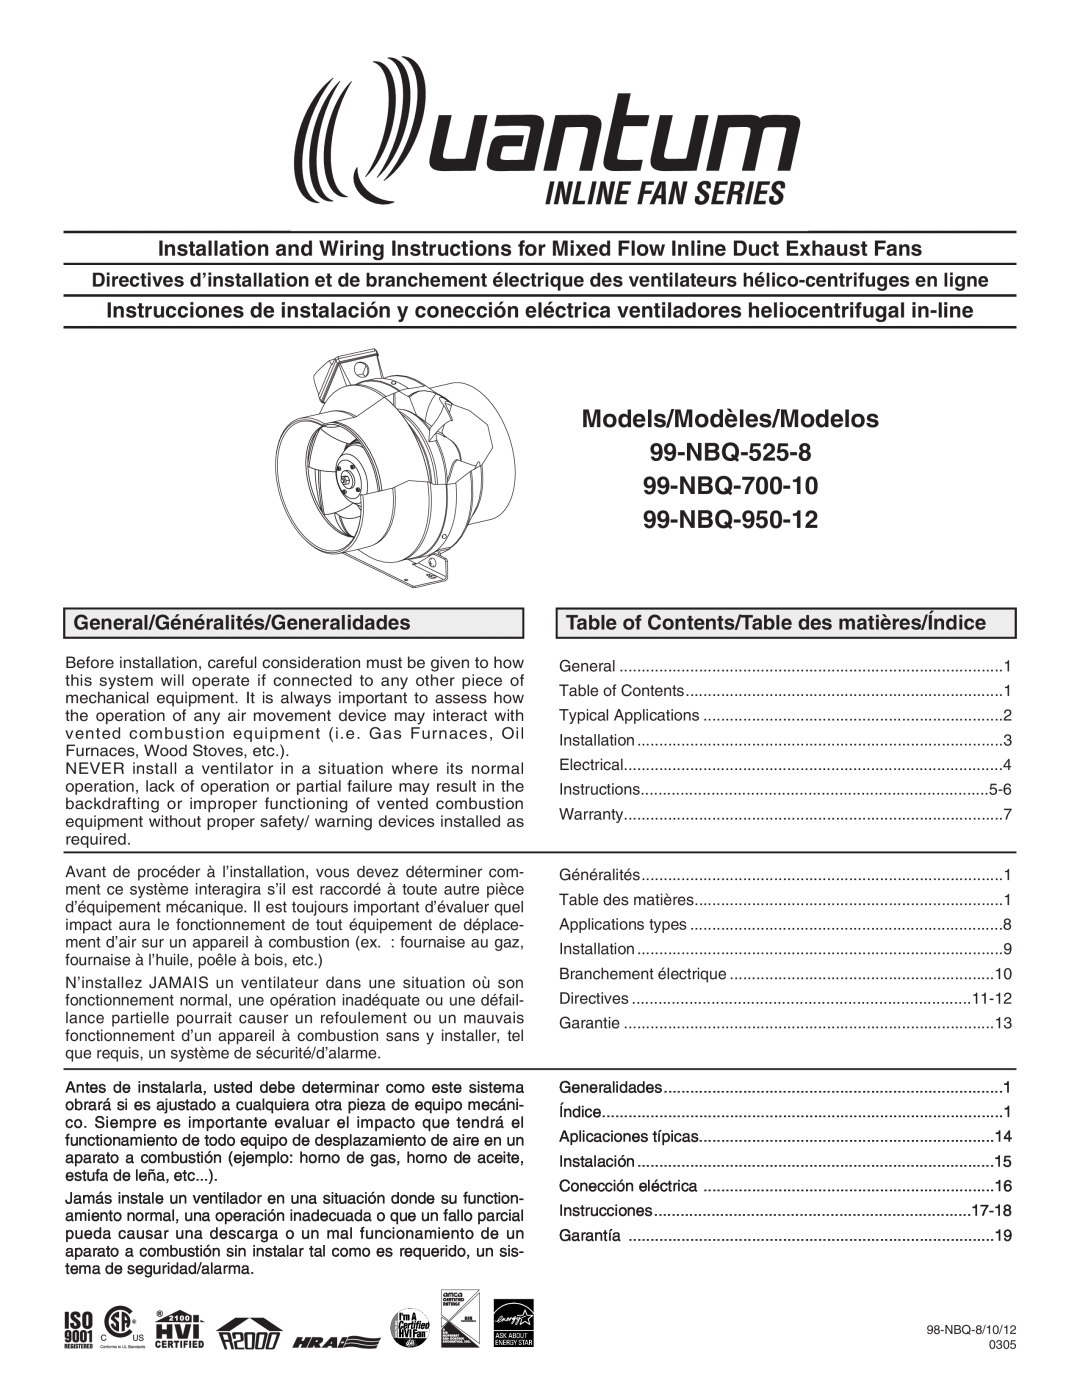 Quantum warranty Models/Modèles/Modelos 99-NBQ-525-8 99-NBQ-700-10, NBQ-950-12, General/Généralités/Generalidades 